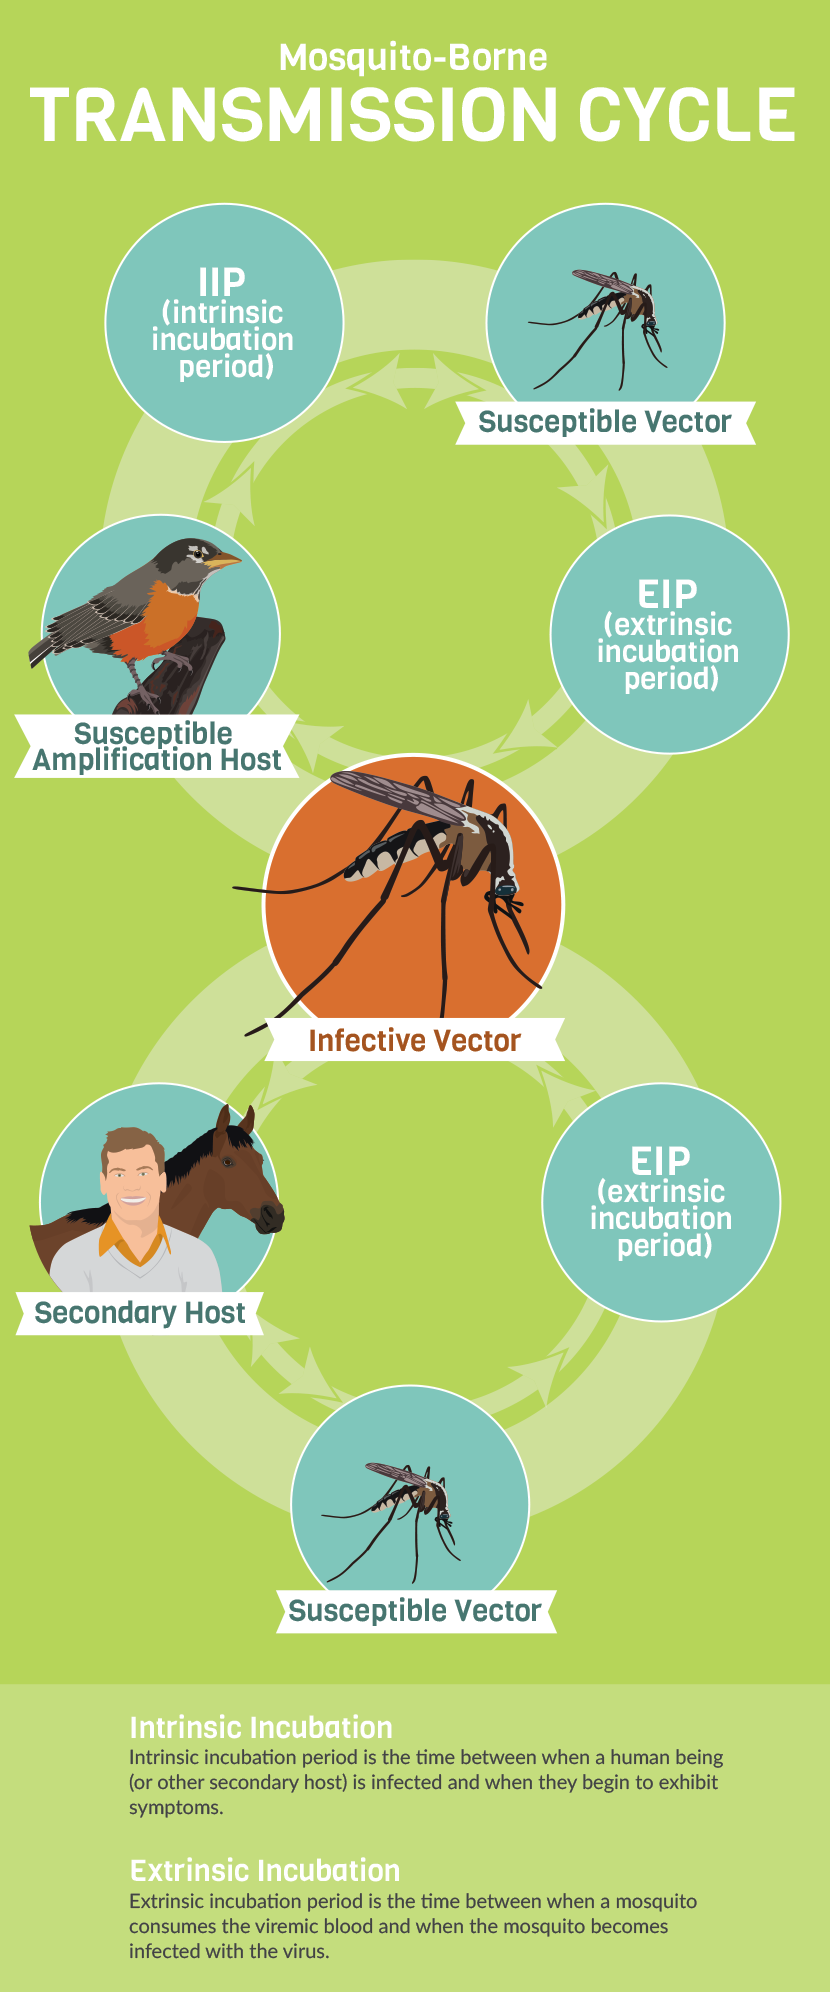 How to Prevent Mosquito-Borne Illnesses | Fix.com